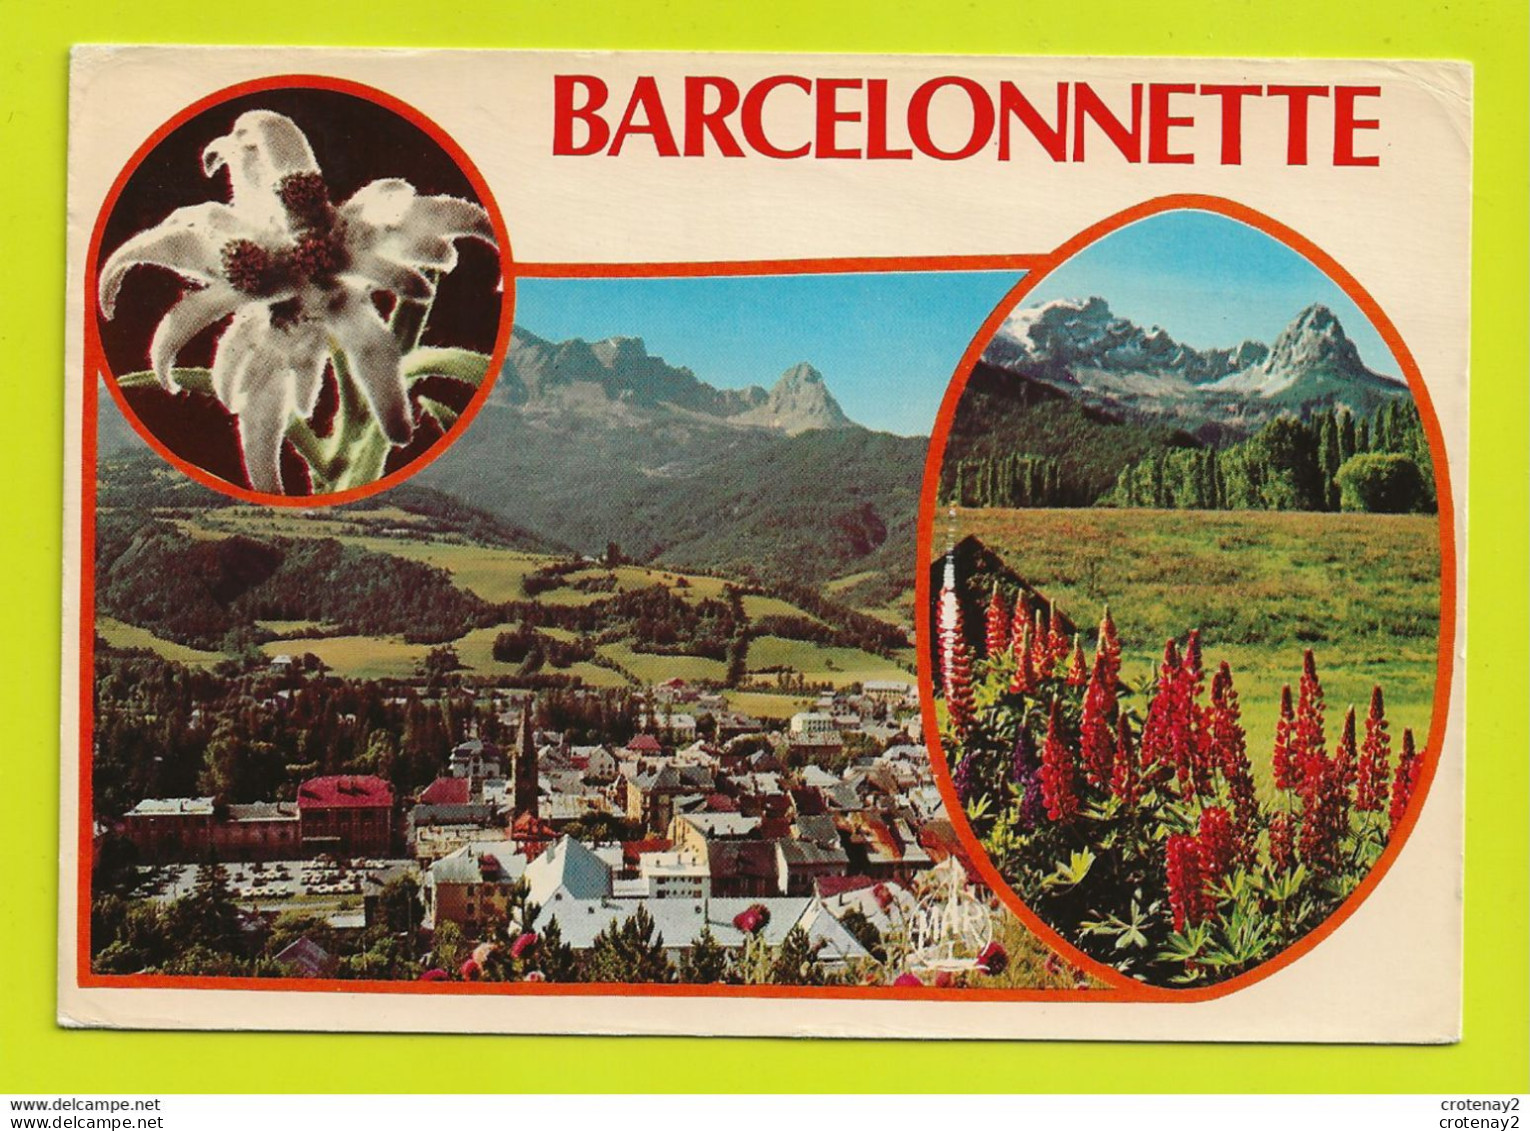 04 BARCELONNETTE Souvenir N°9762 Années 60 - Barcelonnette